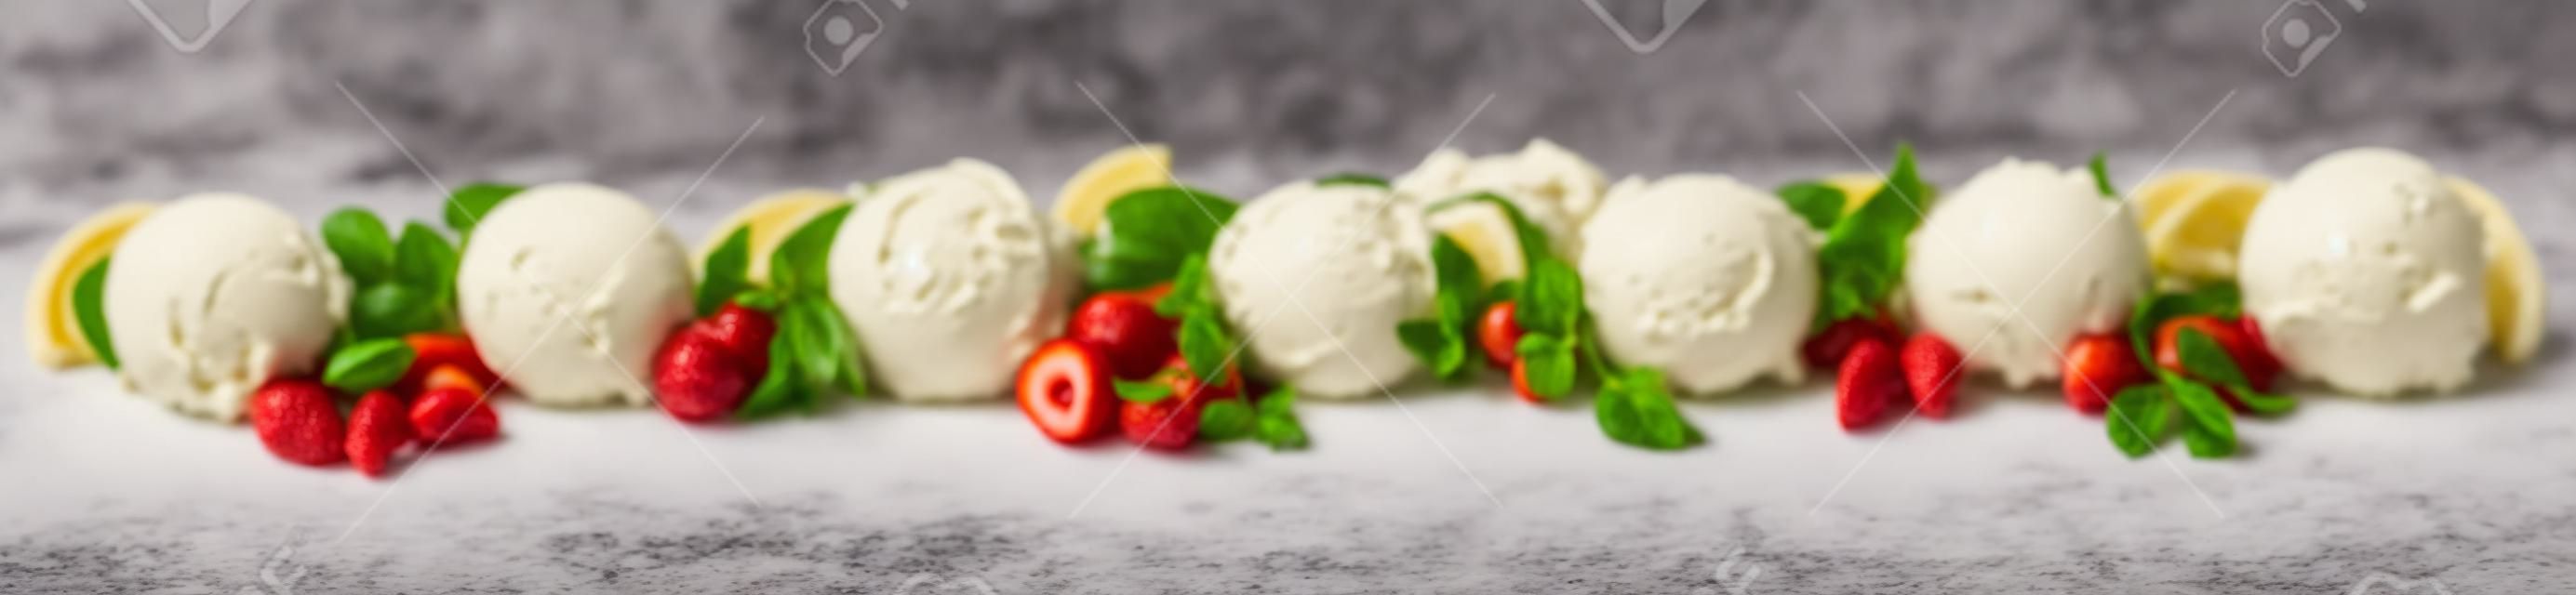 다양한 과일 맛, 바닐라, 초콜릿, 아몬드가 포함된 다양한 이탈리아 아이스크림 디저트가 포함된 넓은 파노라마 배너는 흰색에 신선한 재료가 있는 스쿠프 라인으로 표시됩니다.